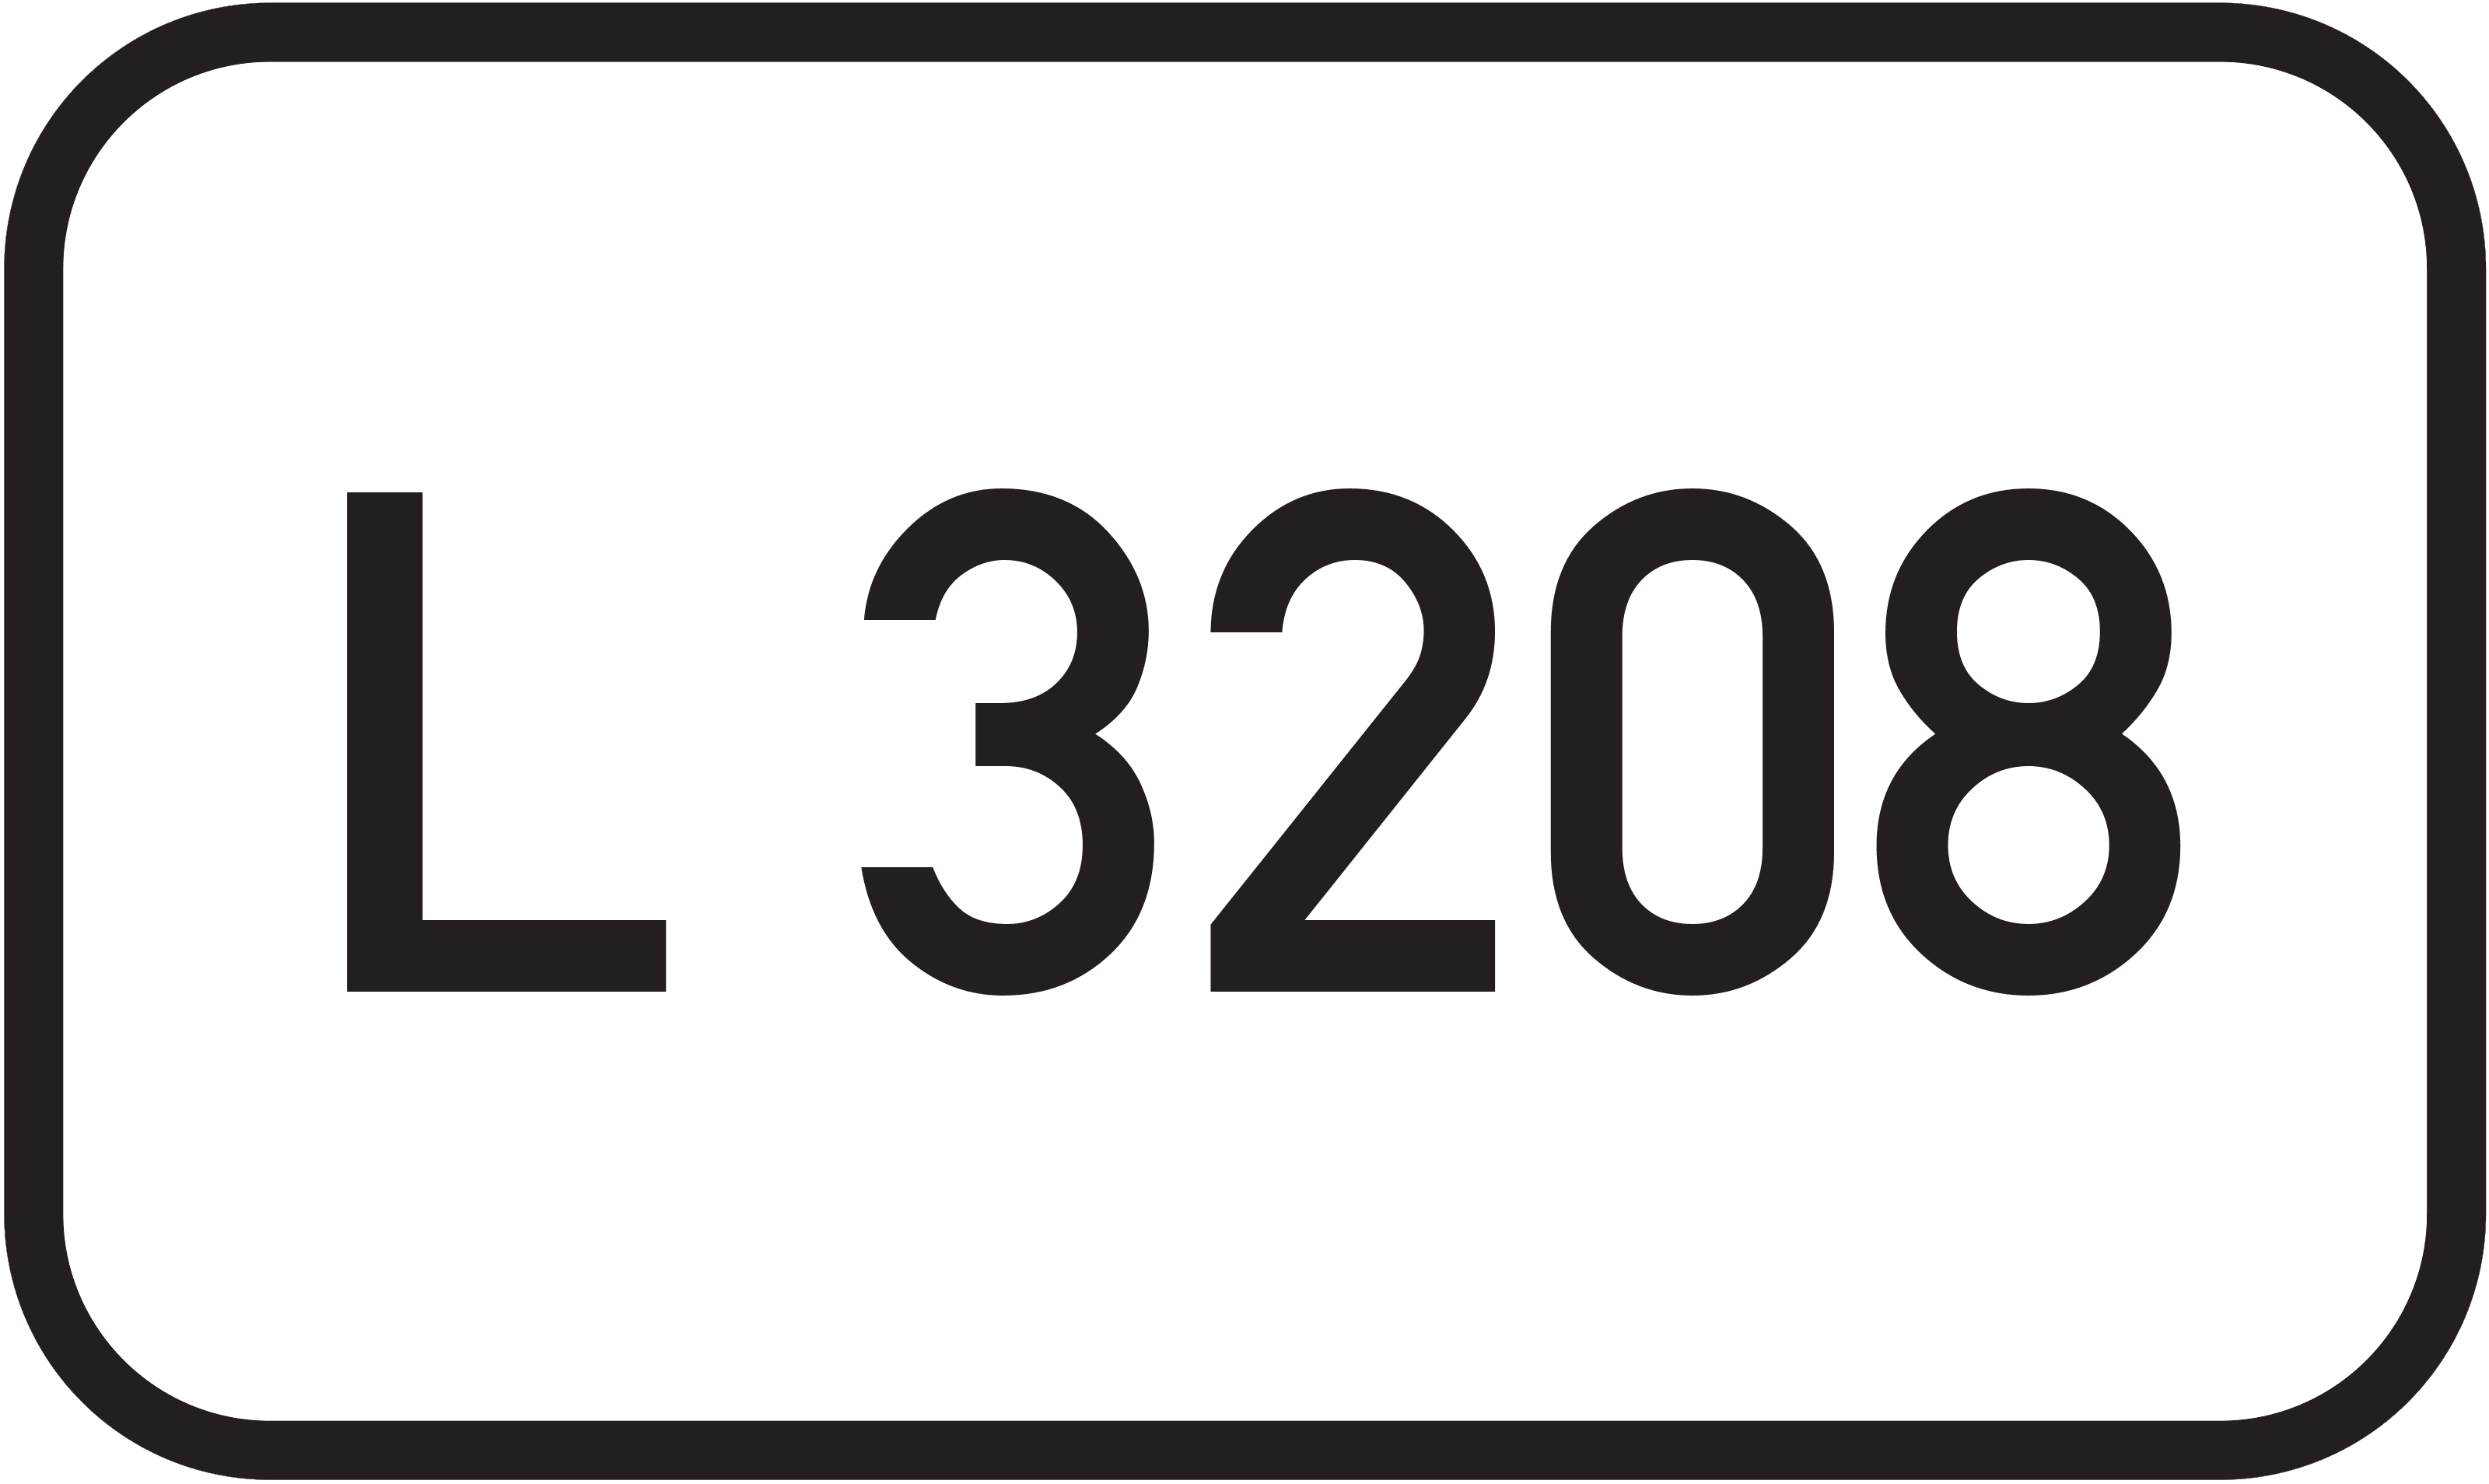 Landesstraße L 3208